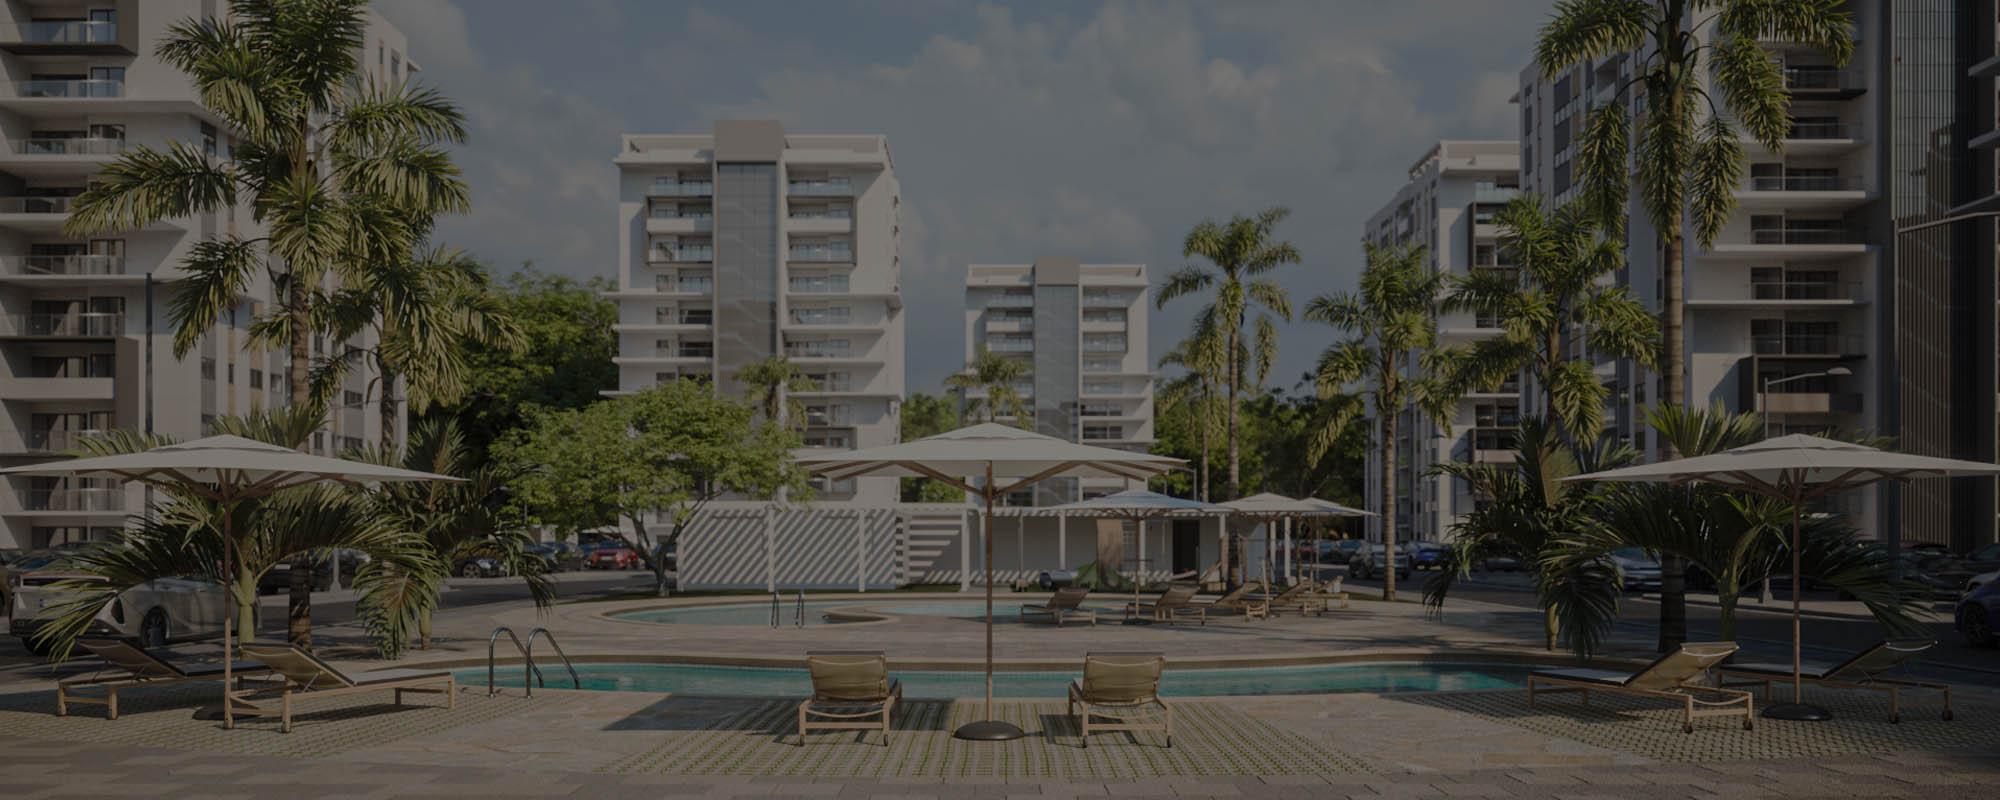 Renders 3D de un complejo residencial en República Dominicana